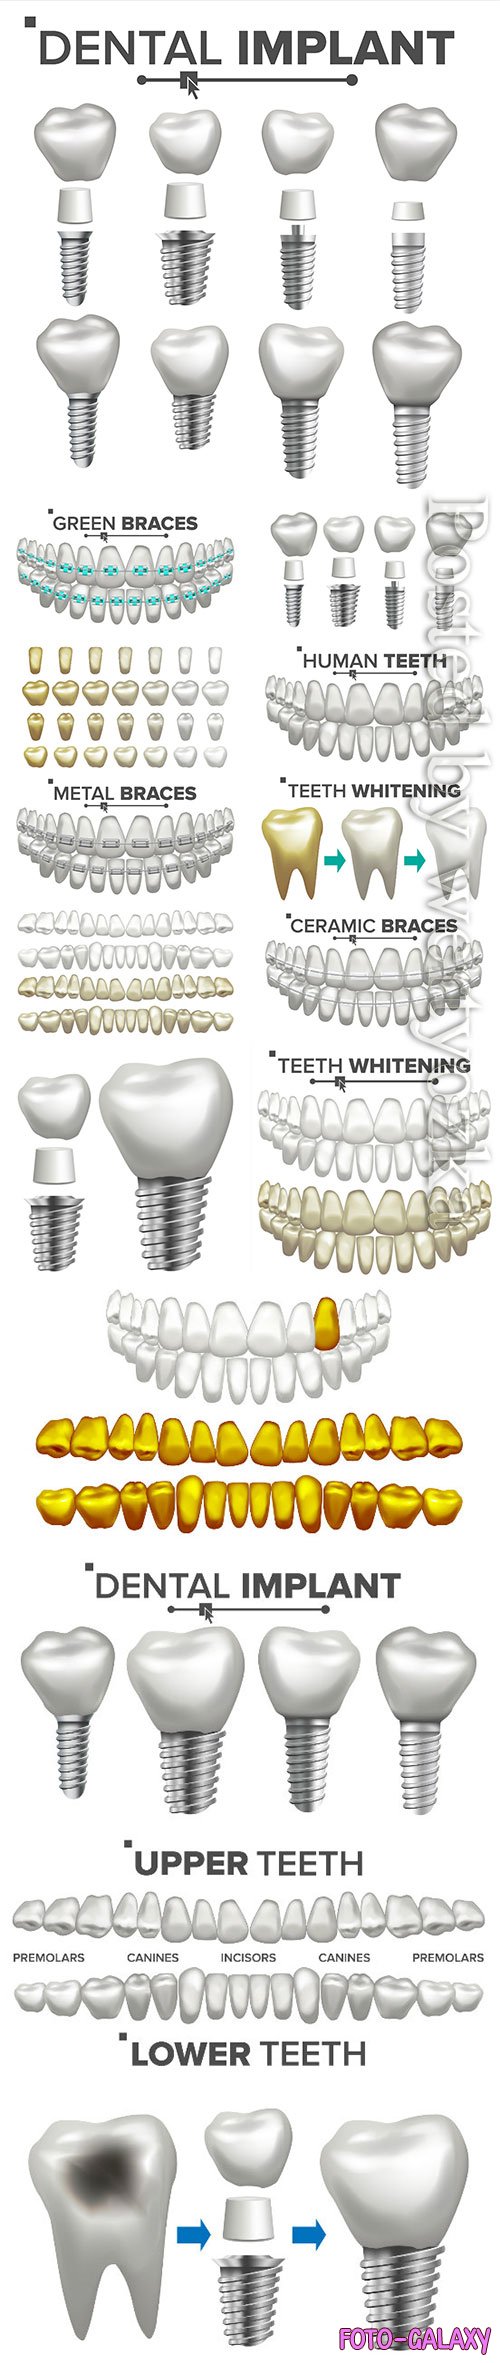 Dental implant illustration vector set